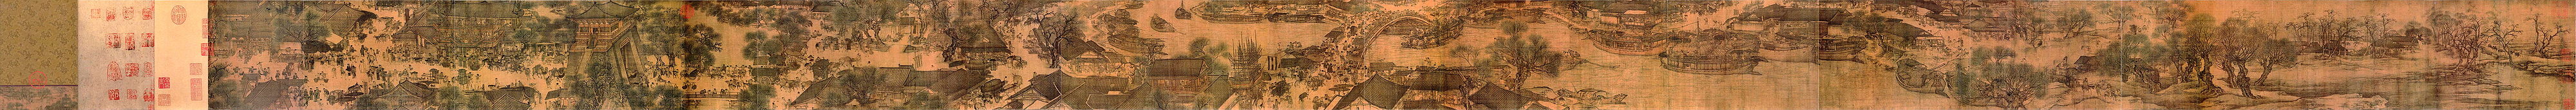 Panorama aus der Qingming-Rolle von Zhang Zeduan